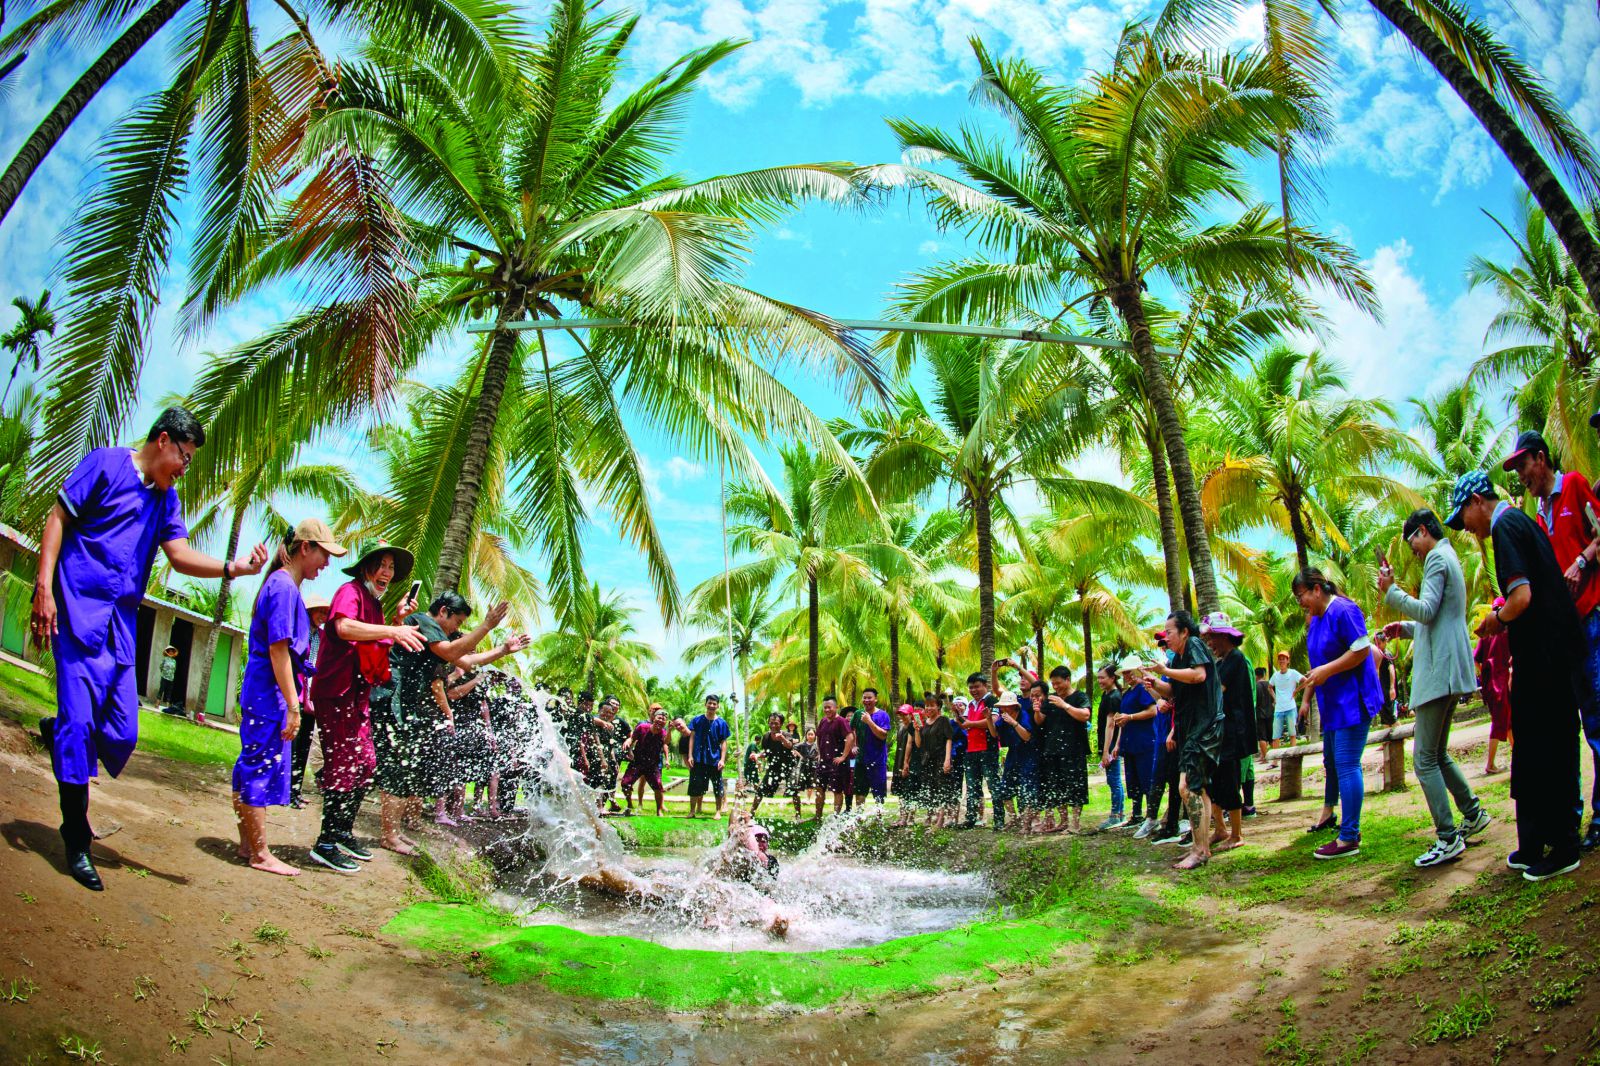 Du khách thăm quan trải nghiệm trong vườn dừa